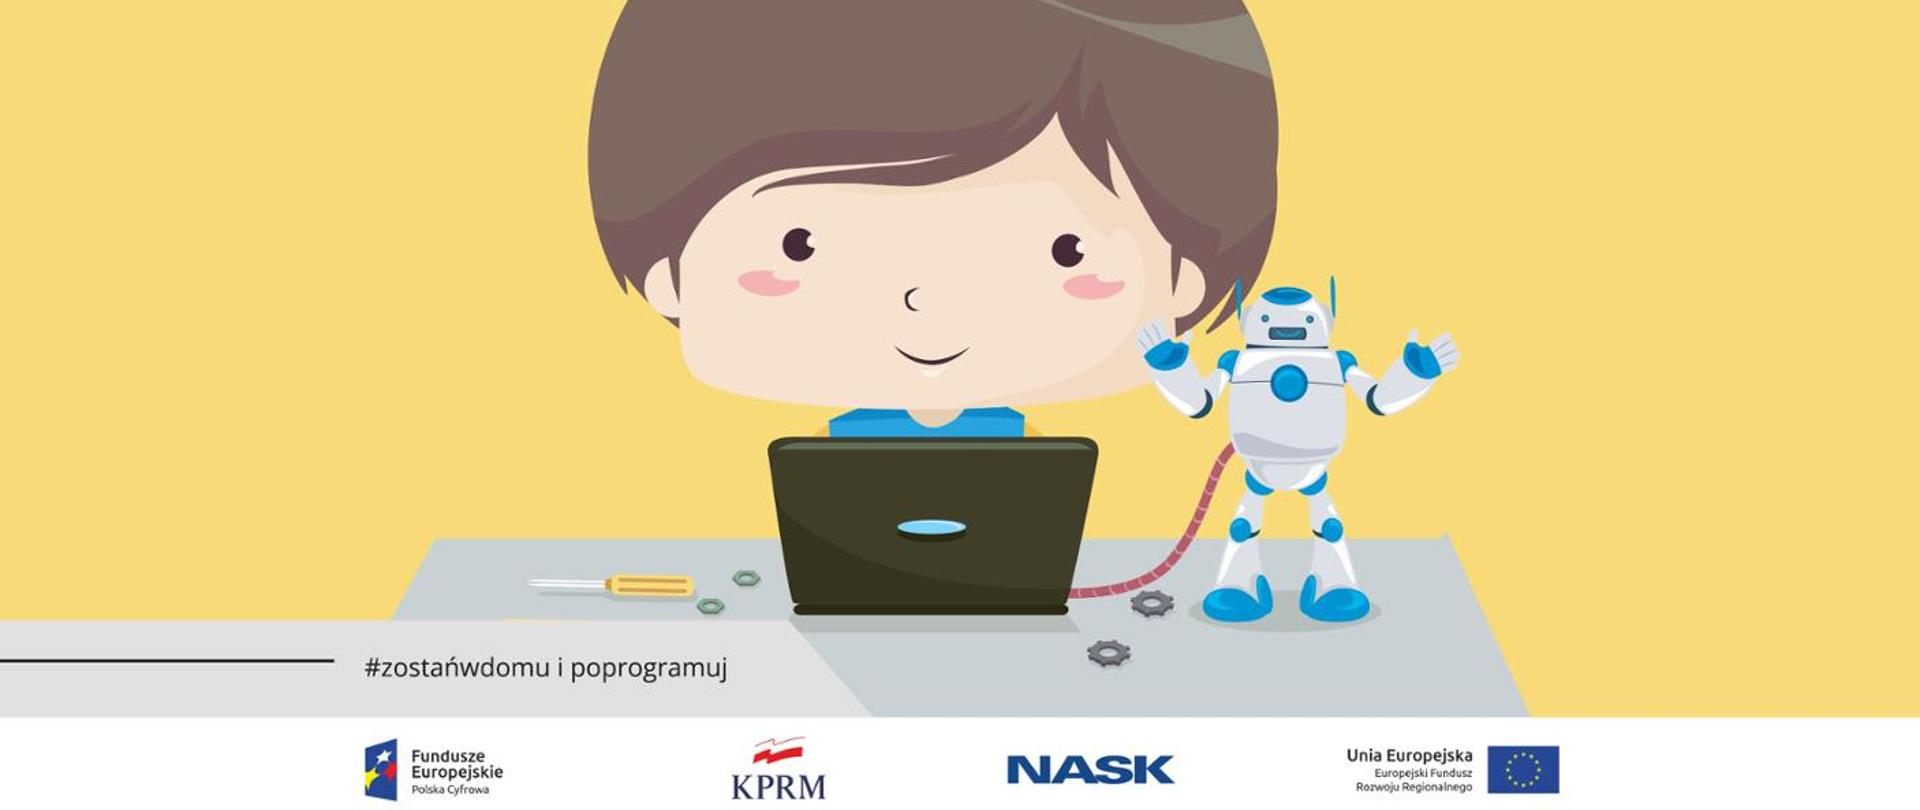 Kolorowa grafika z ilustracją chłopca z laptopem i robotem. Na dole po lewo tekst "#zostańwdomu i programuj"